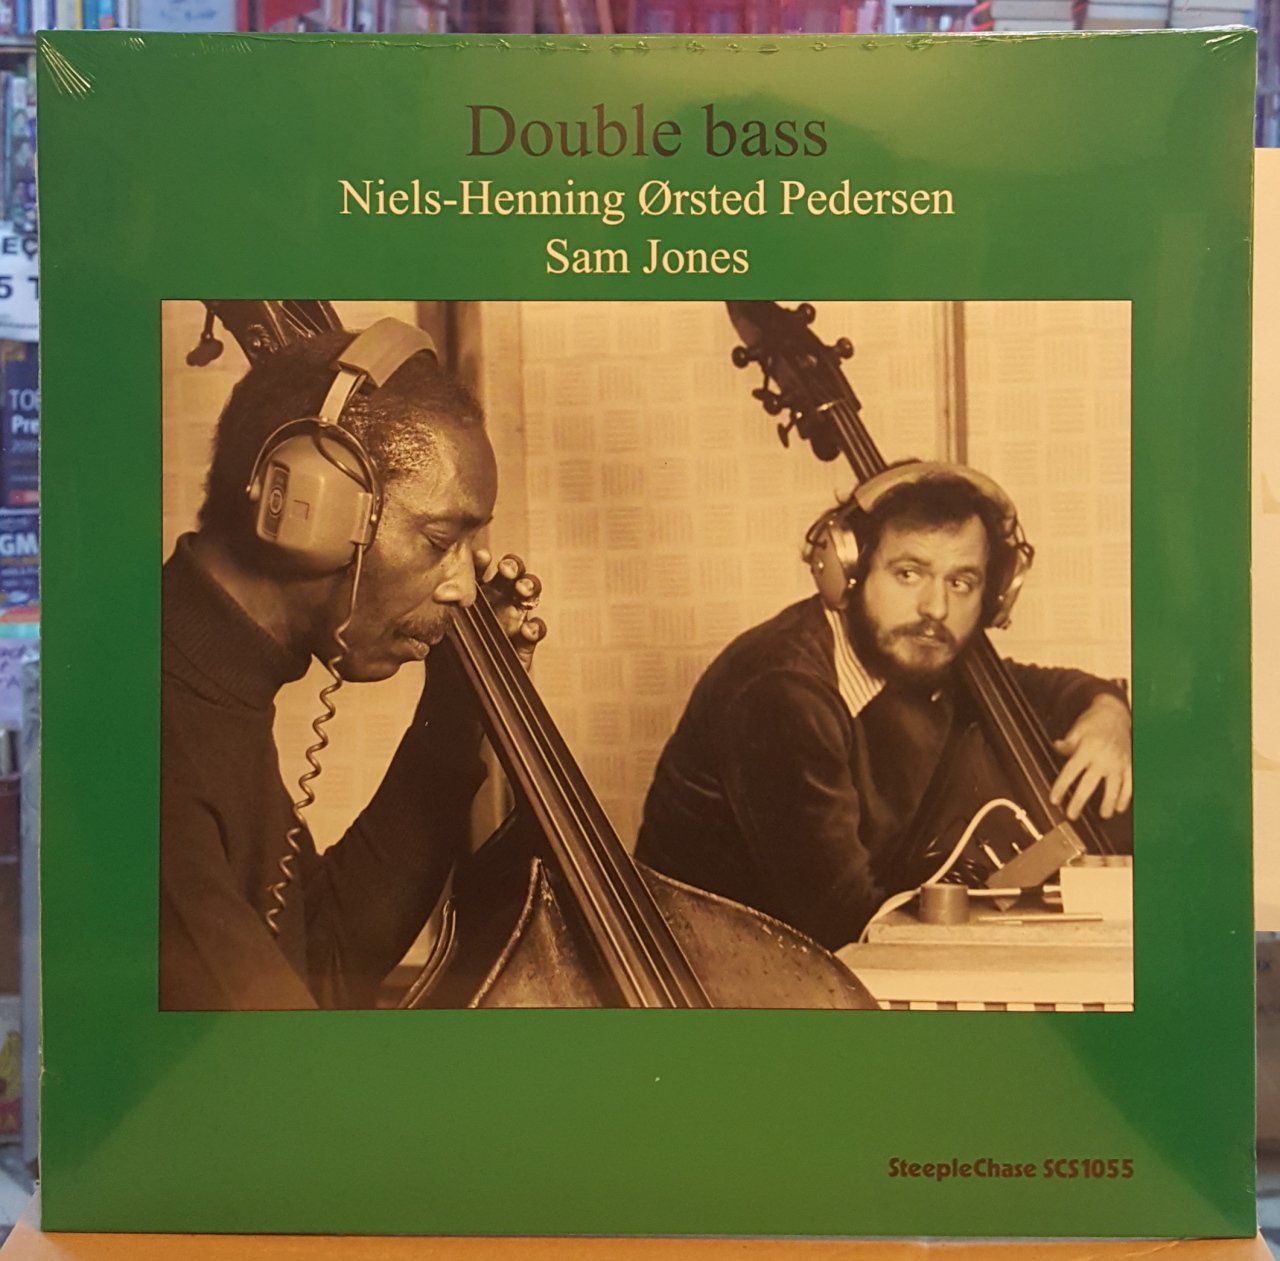 NIELS-HENNING ØRSTED PEDERSEN & SAM JONES - DOUBLE BASS (1976) - LP PLAK SIFIR STEEPLECHASE